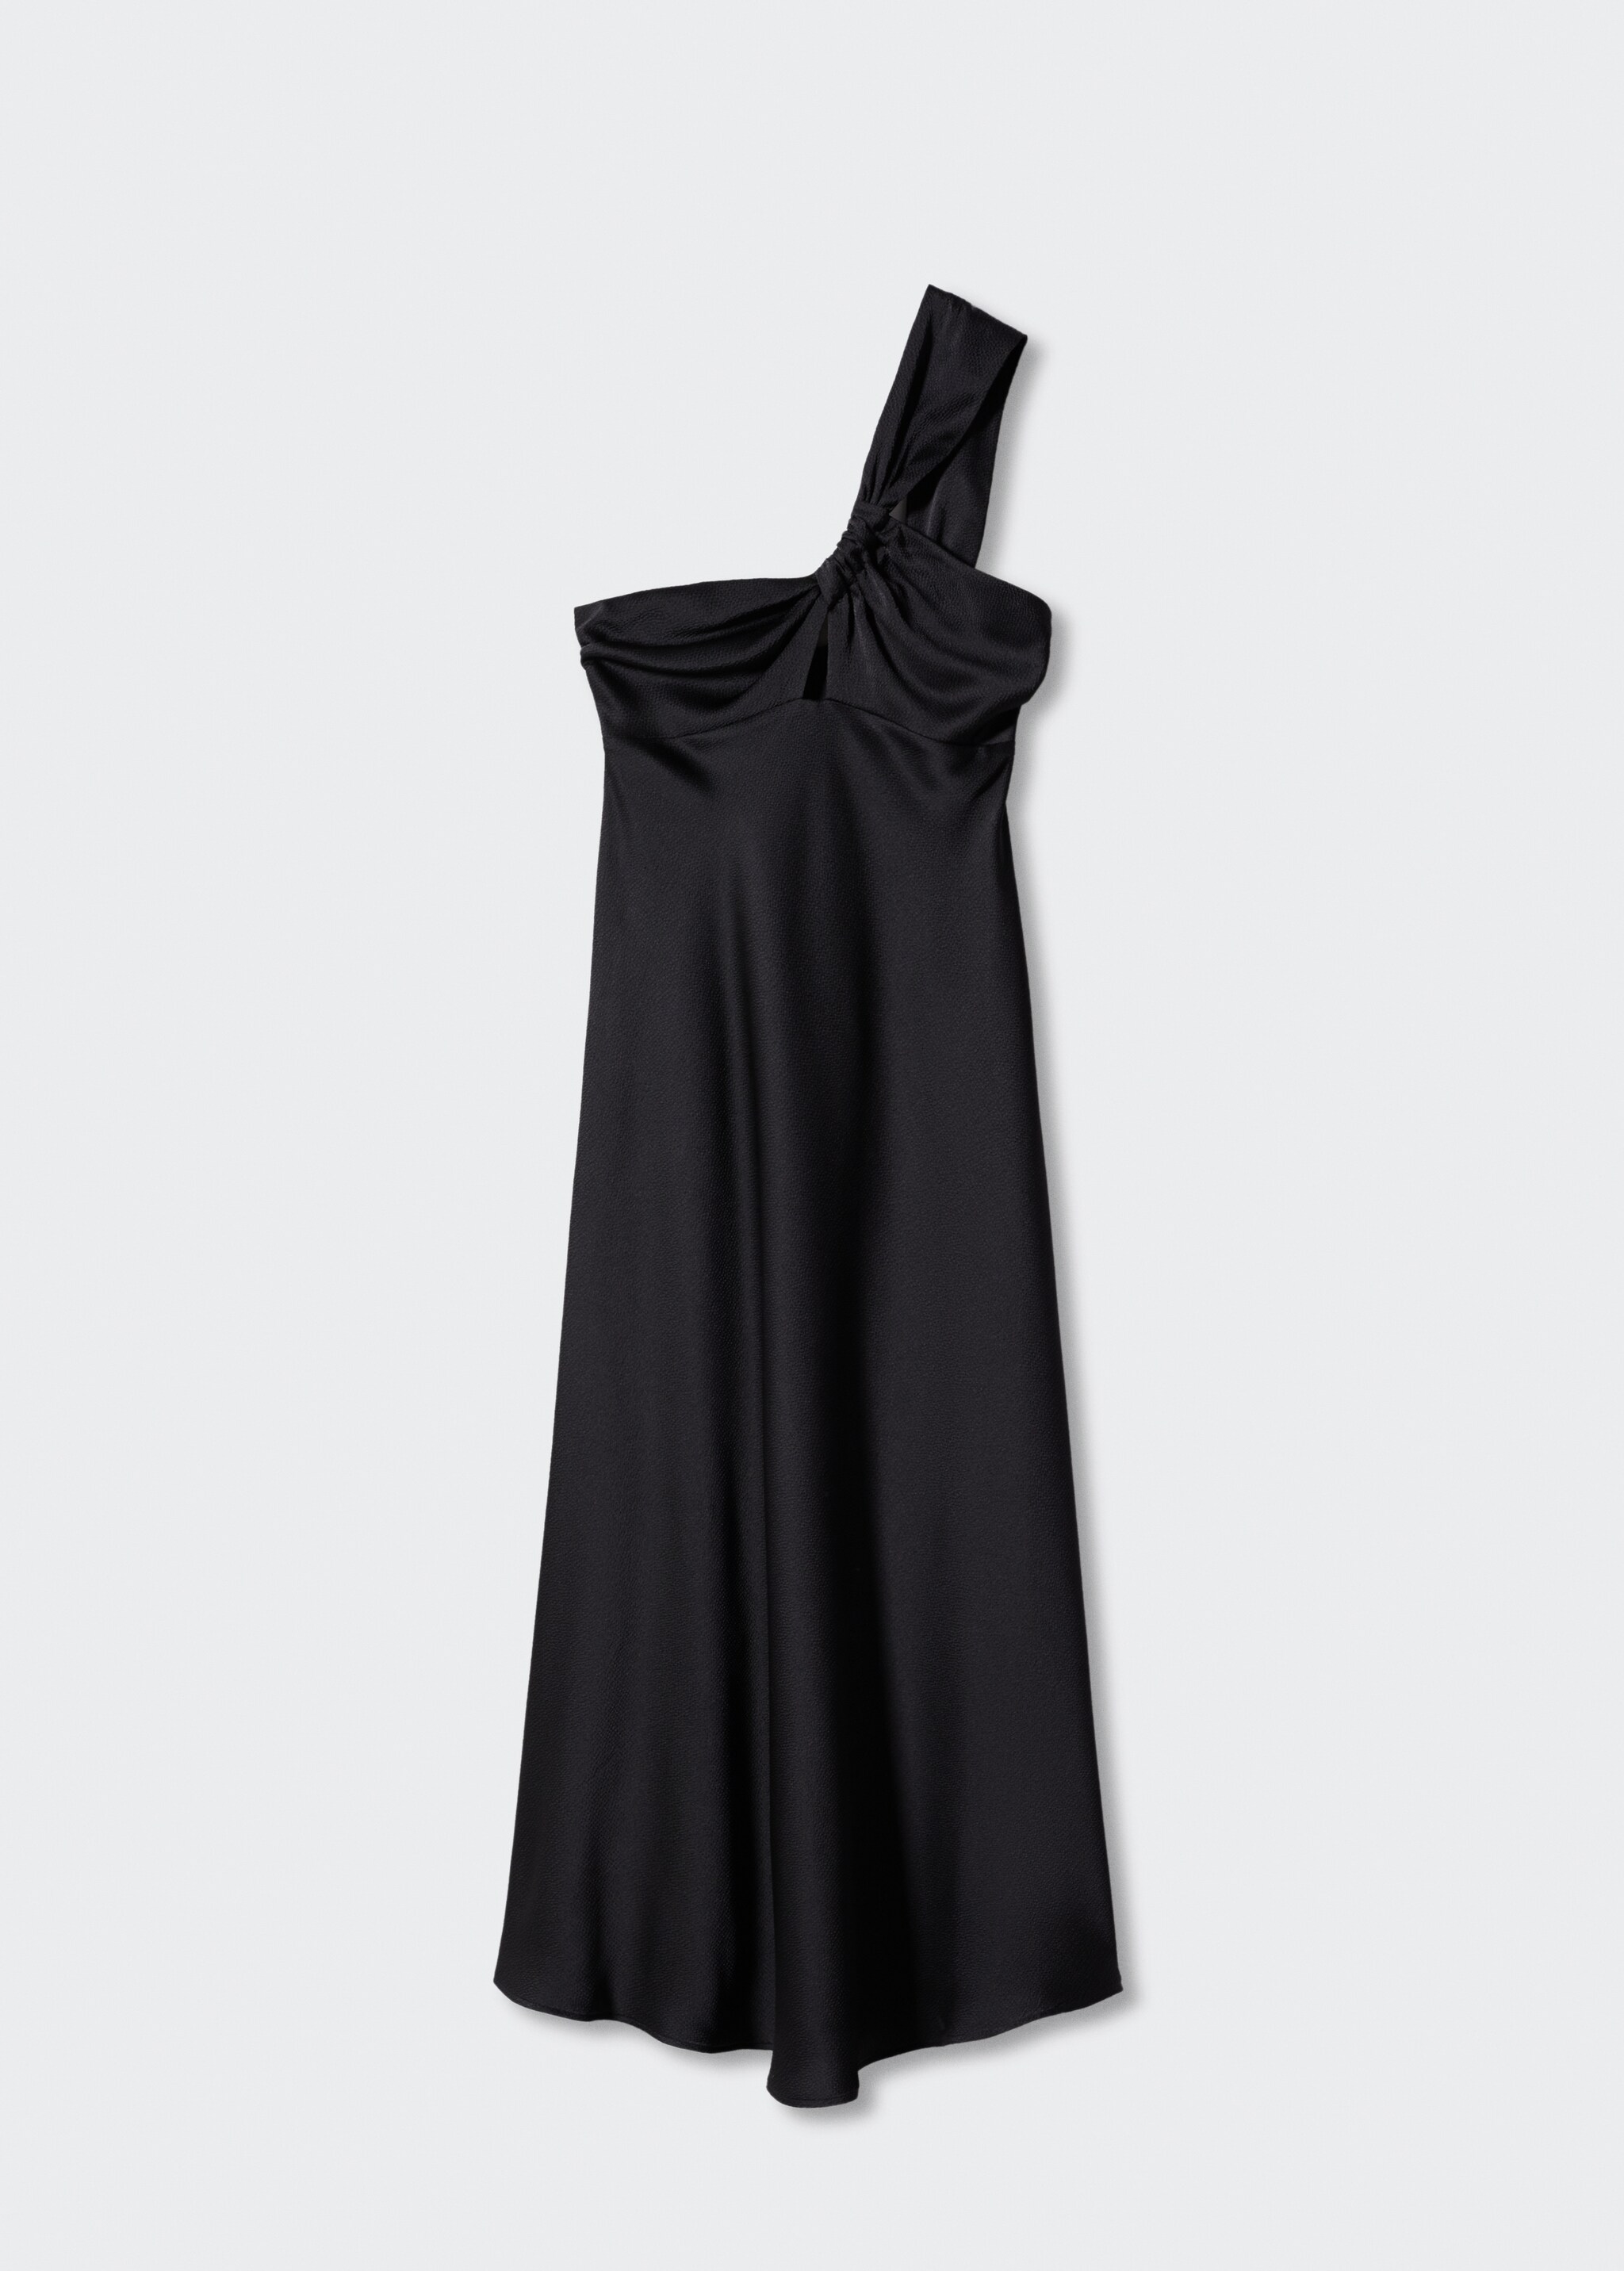 Φόρεμα μαύρο σατέν ασύμμετρο - Προϊόν χωρίς μοντέλο